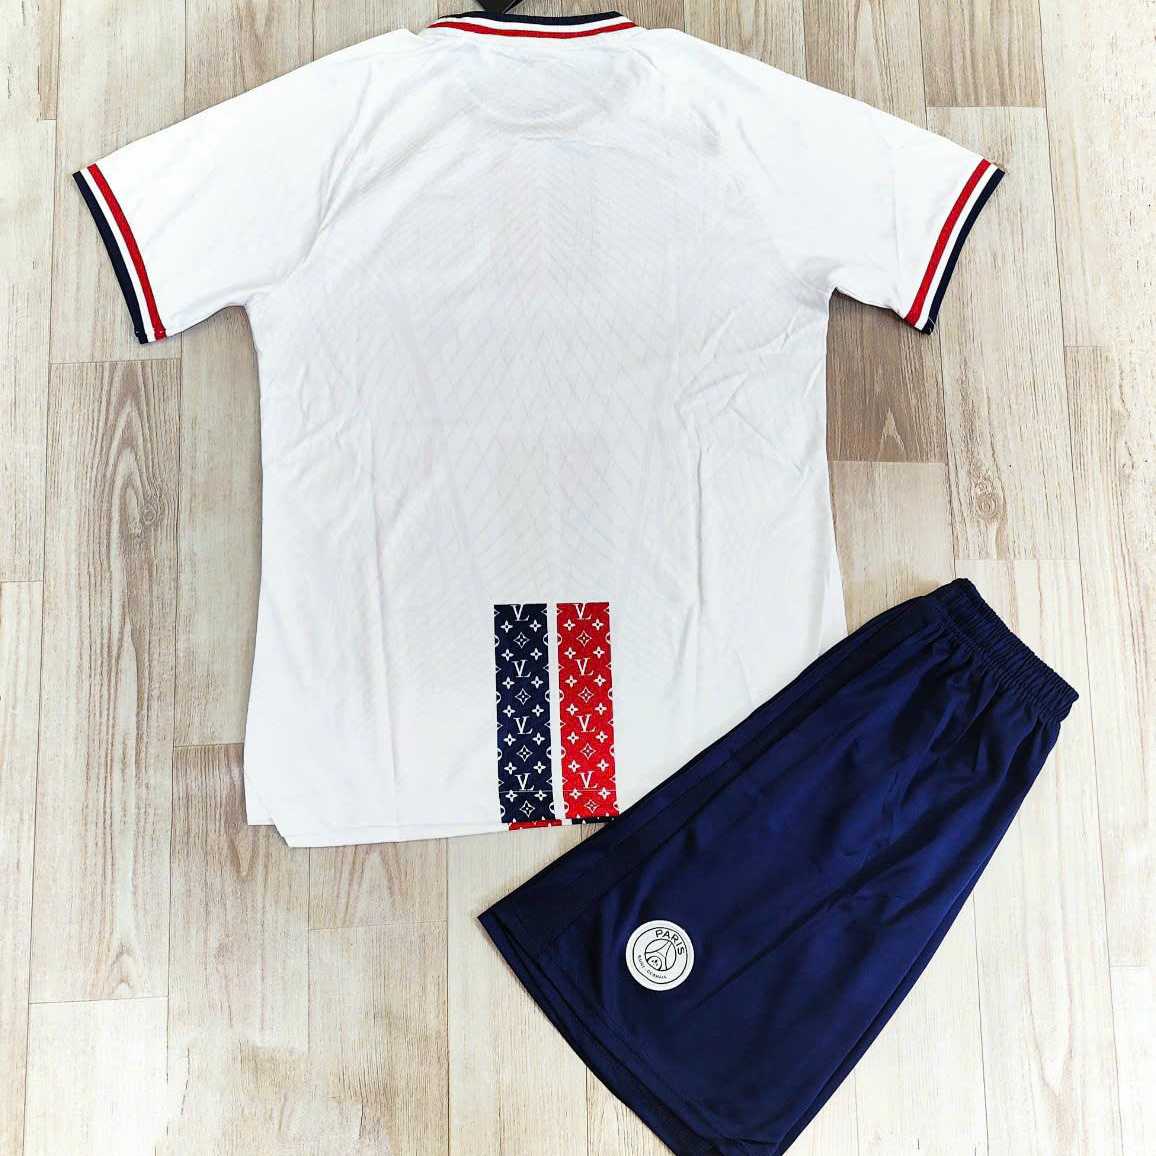 Bộ quần áo bóng đá psg Paris Saint-Germain trắng kẻ đen đỏ in LV logo thêu vải spf thái 2